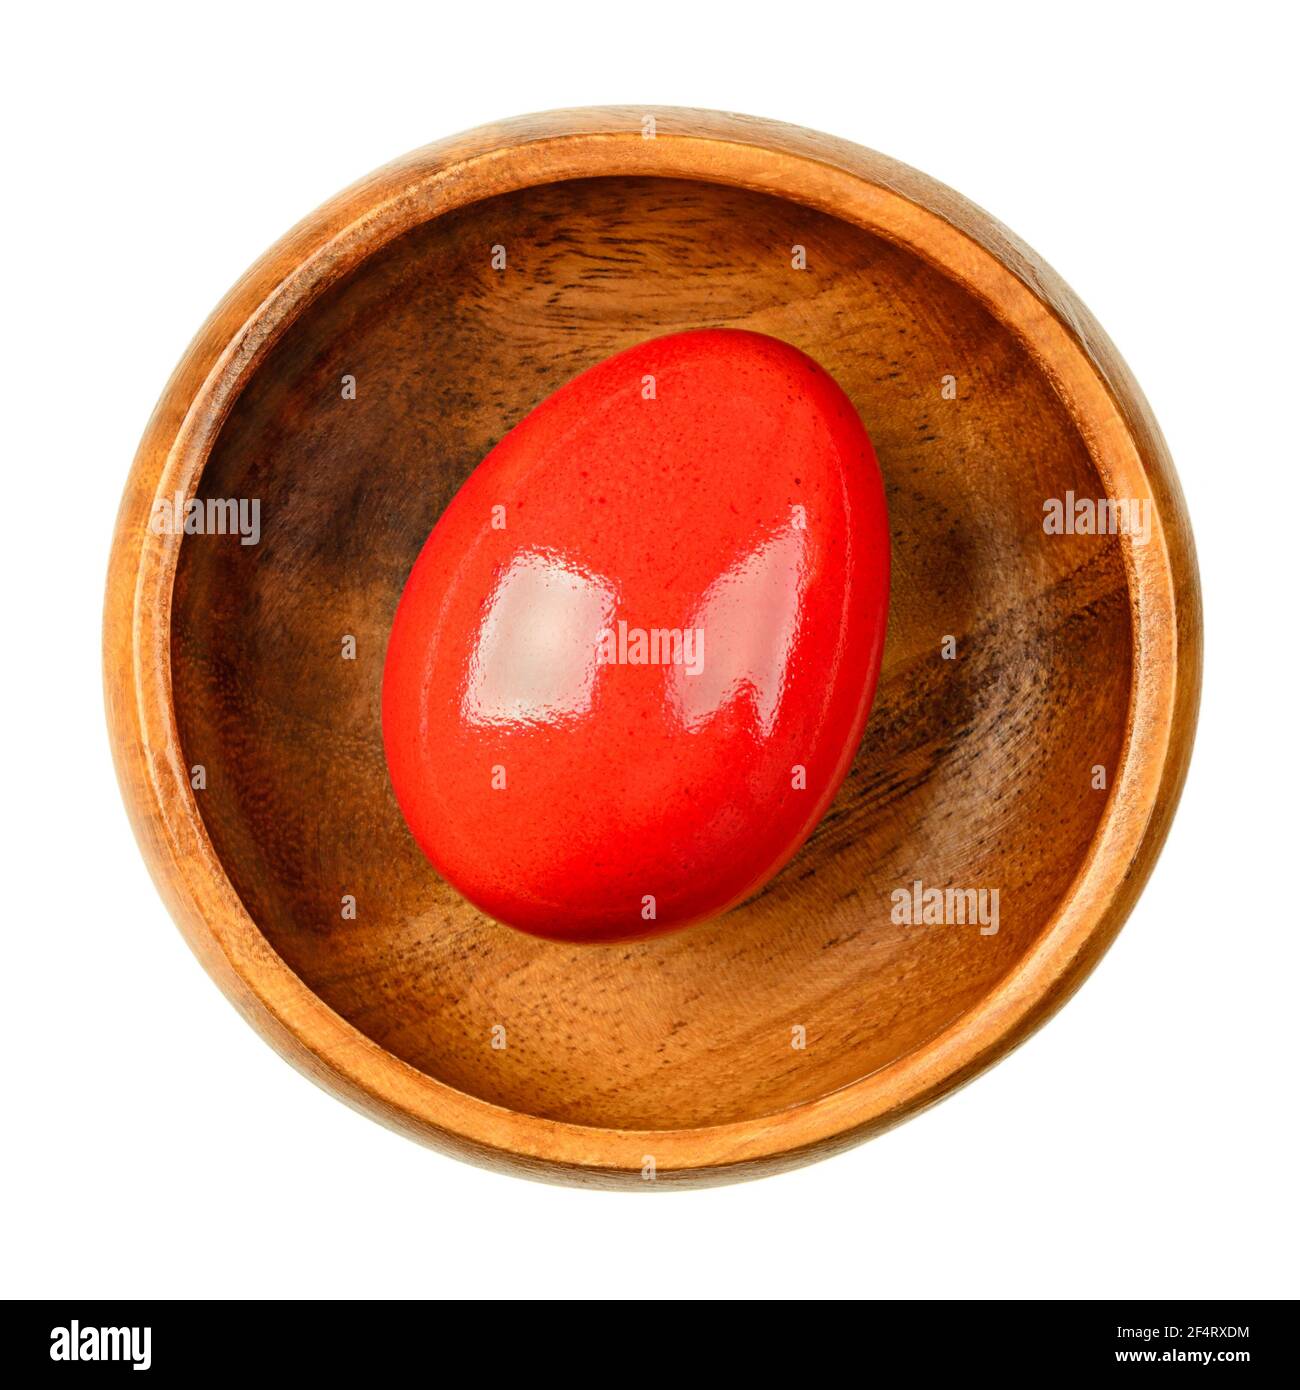 Rot gefärbtes Osterei in einer Holzschale. Hartgekochtes, bunt gefärbtes Hühnereier. Essbares Ostereier, verzehrfertig, oder für eine Ostereiersuche. Nahaufnahme. Stockfoto